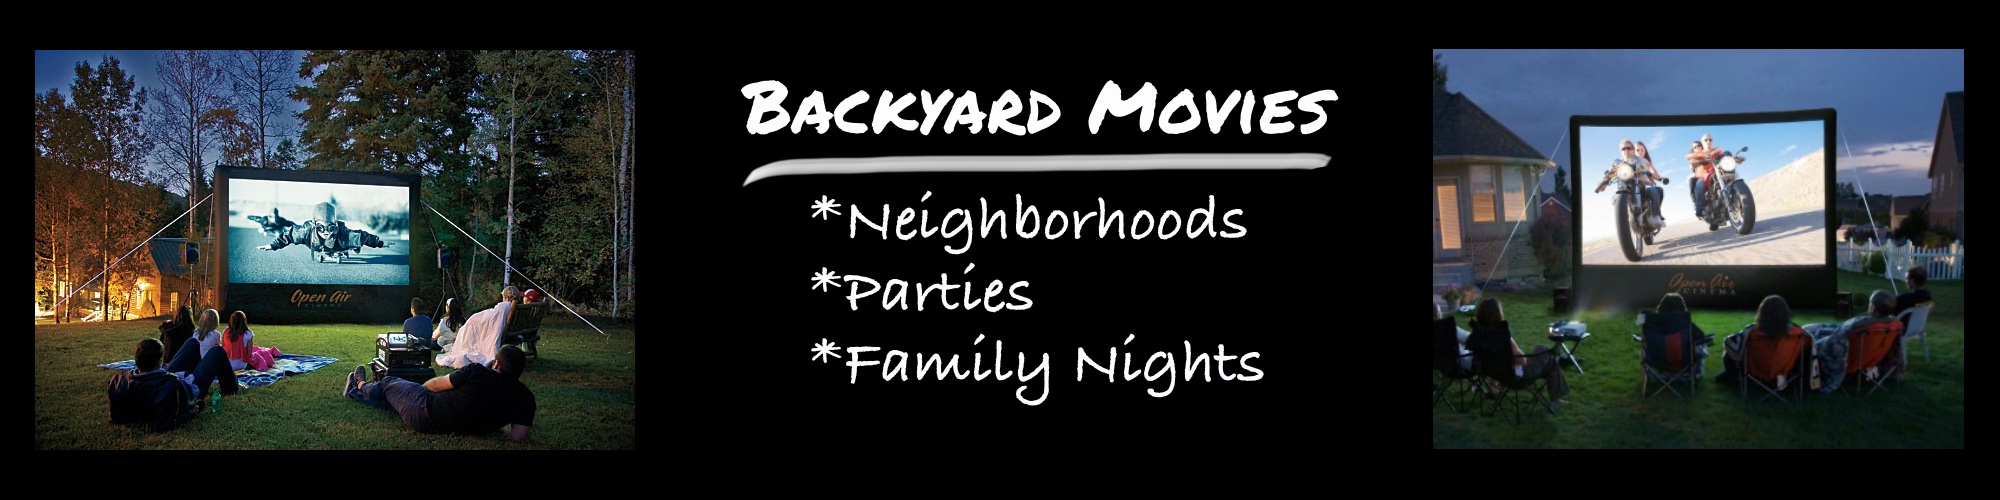 backyard movie screen